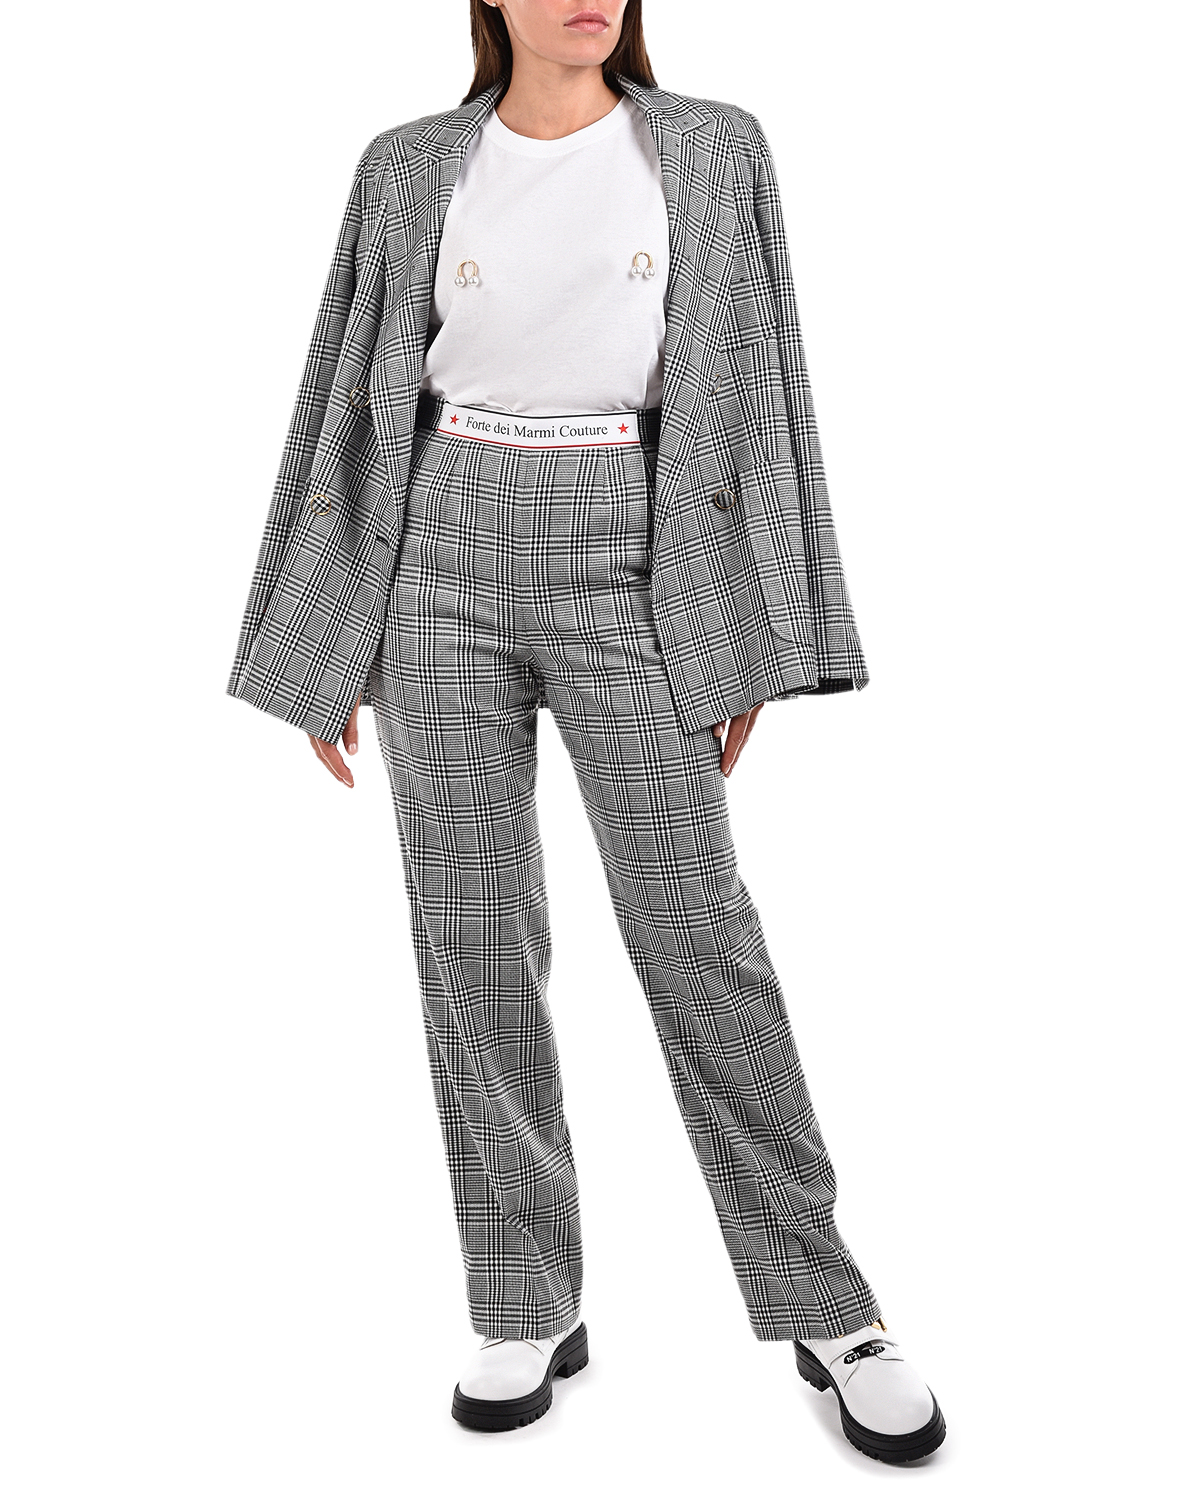 Прямые брюки в клетку Forte dei Marmi Couture, размер 42, цвет серый - фото 2